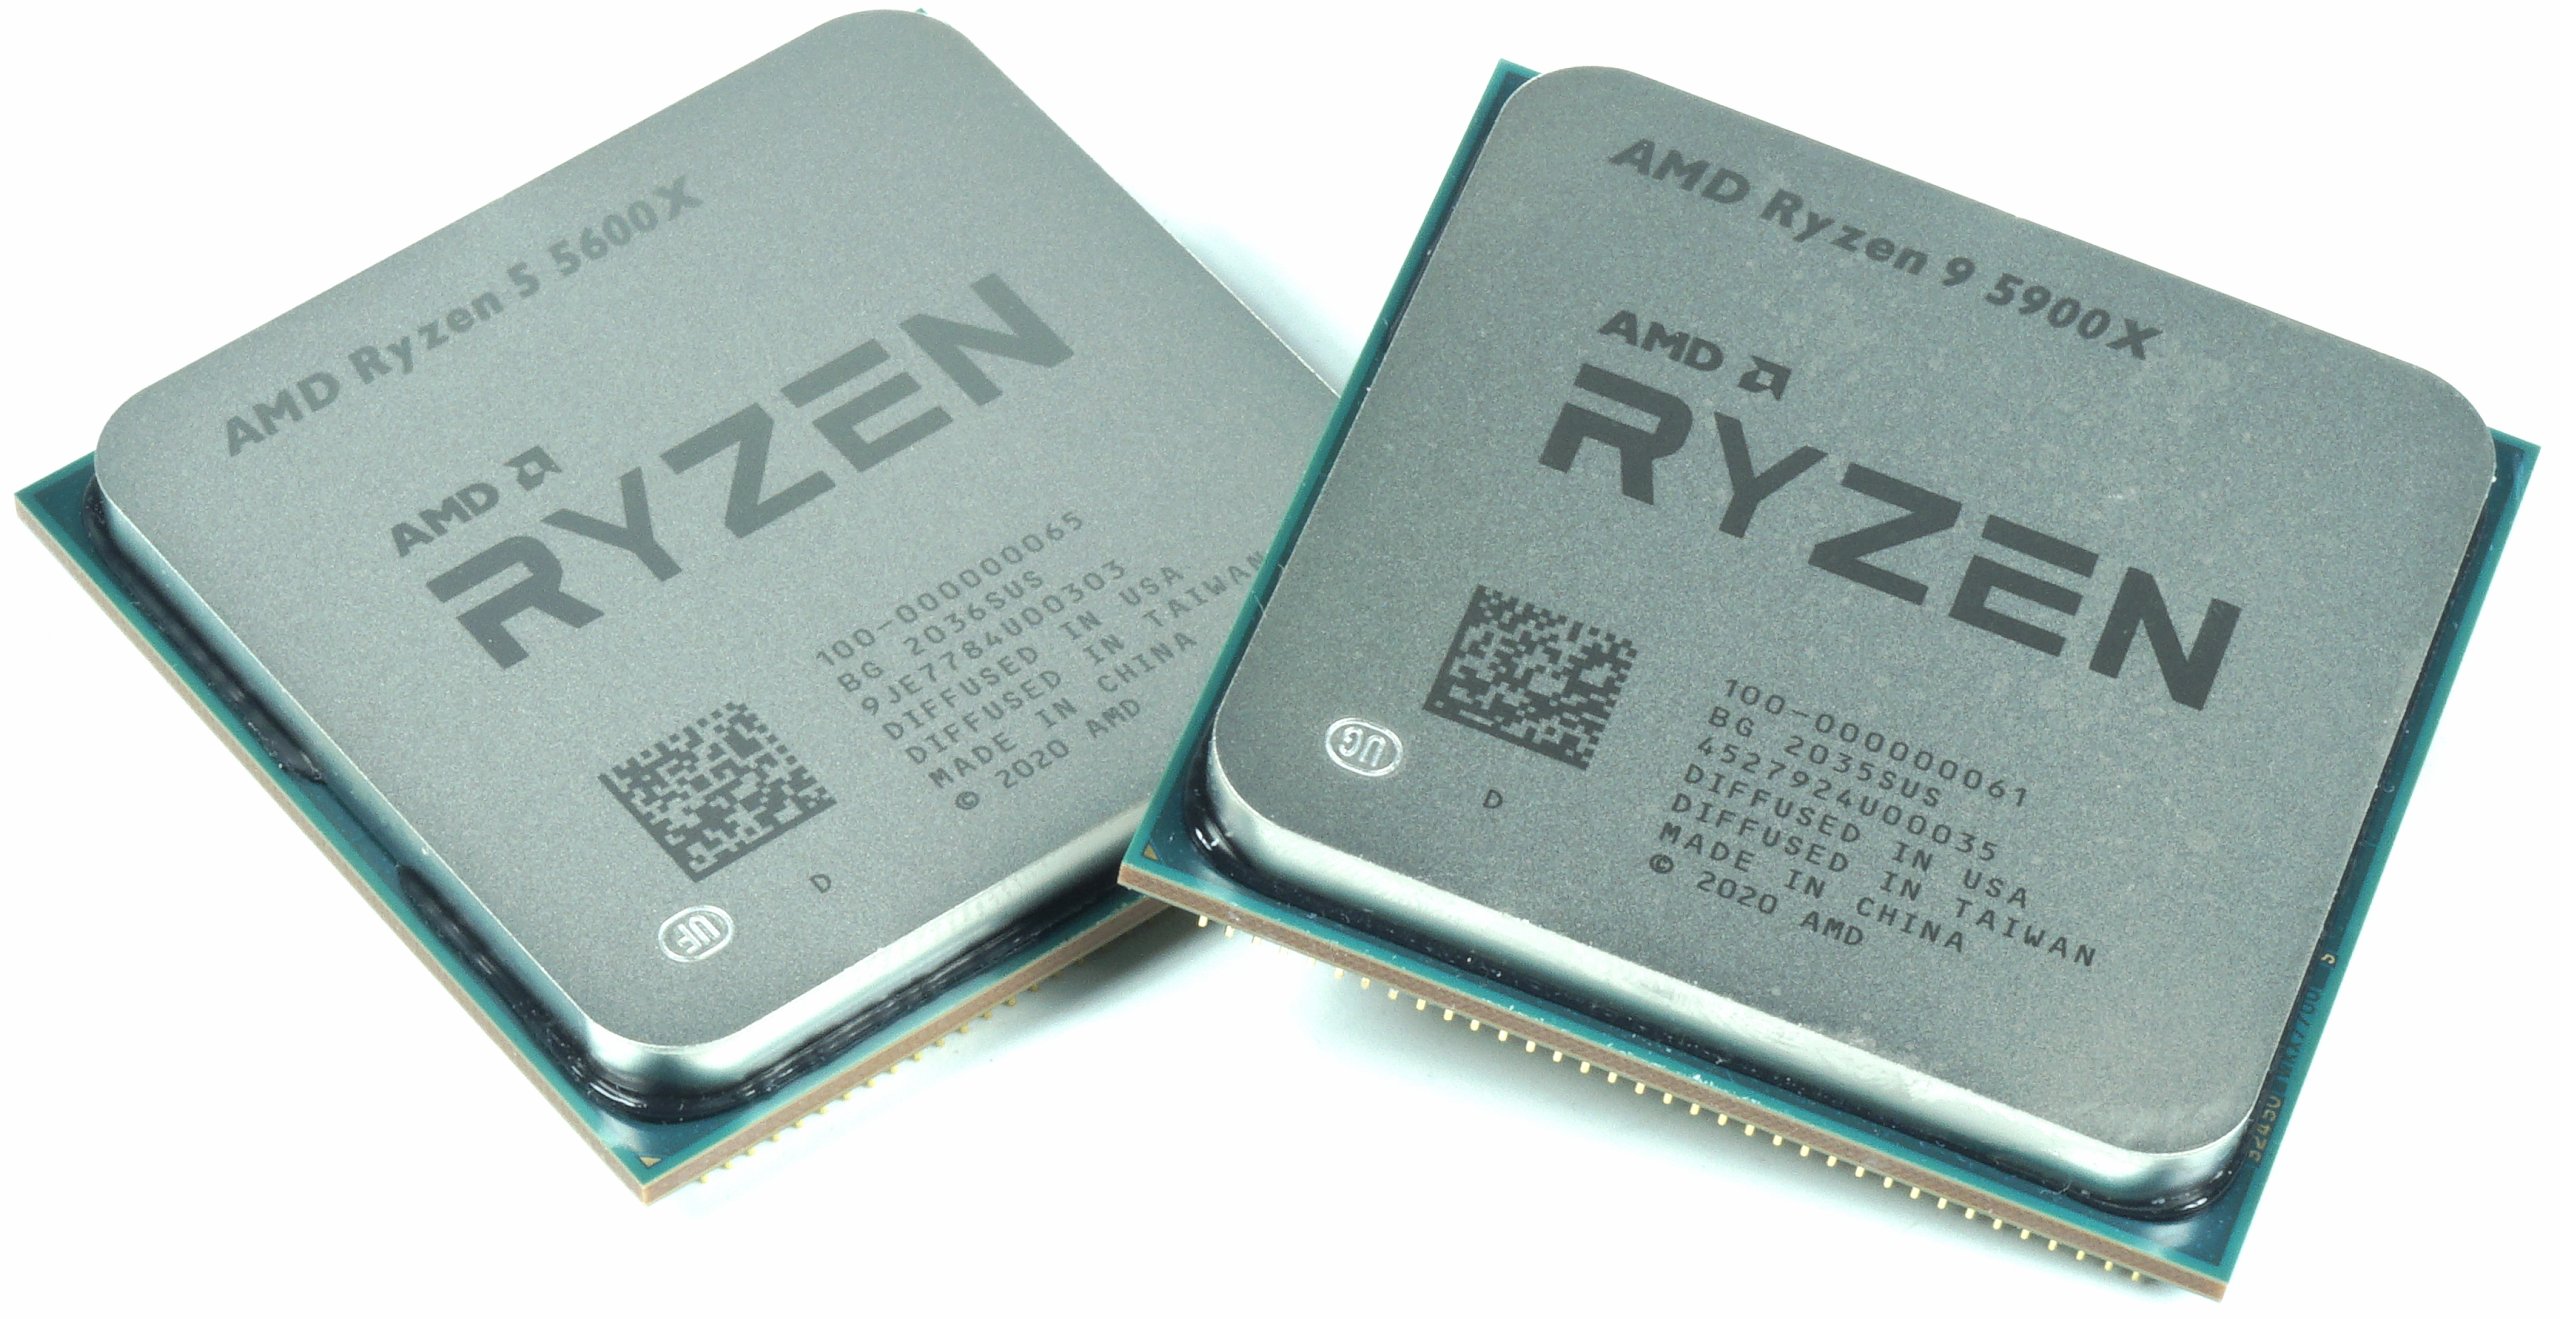 Райзен 5600 сравнение. АМД 9 5900х. Ryzen 5600x. R5 5600x. Процессор AMD Ryzen 5 5600.